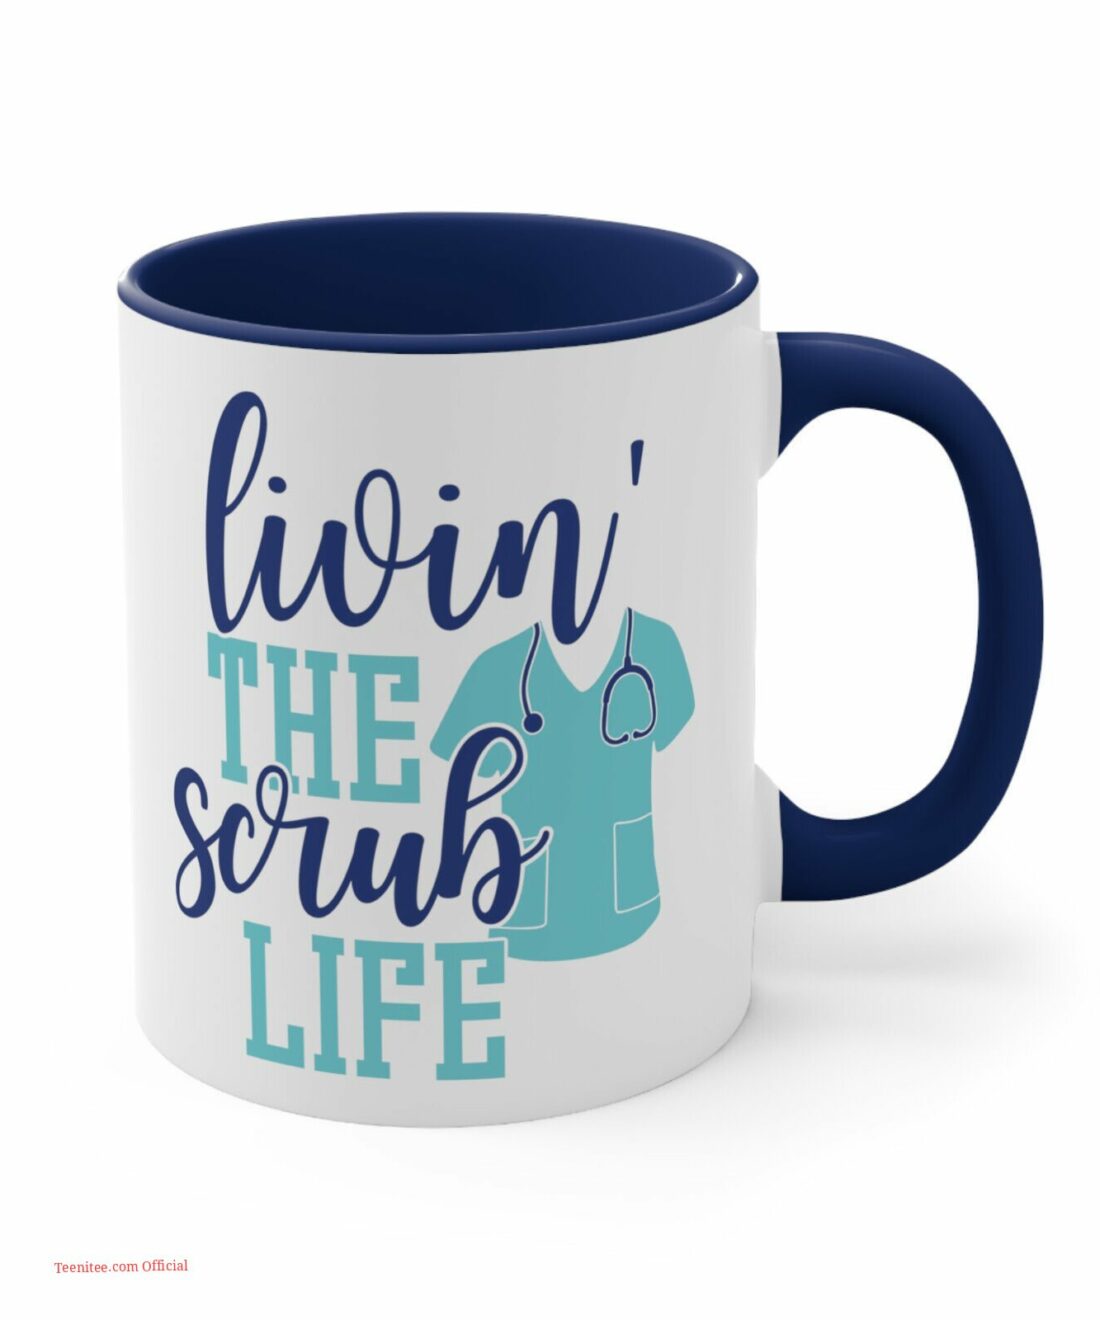 Livin the scrub life| lovely mug gift for nurse - 15 oz